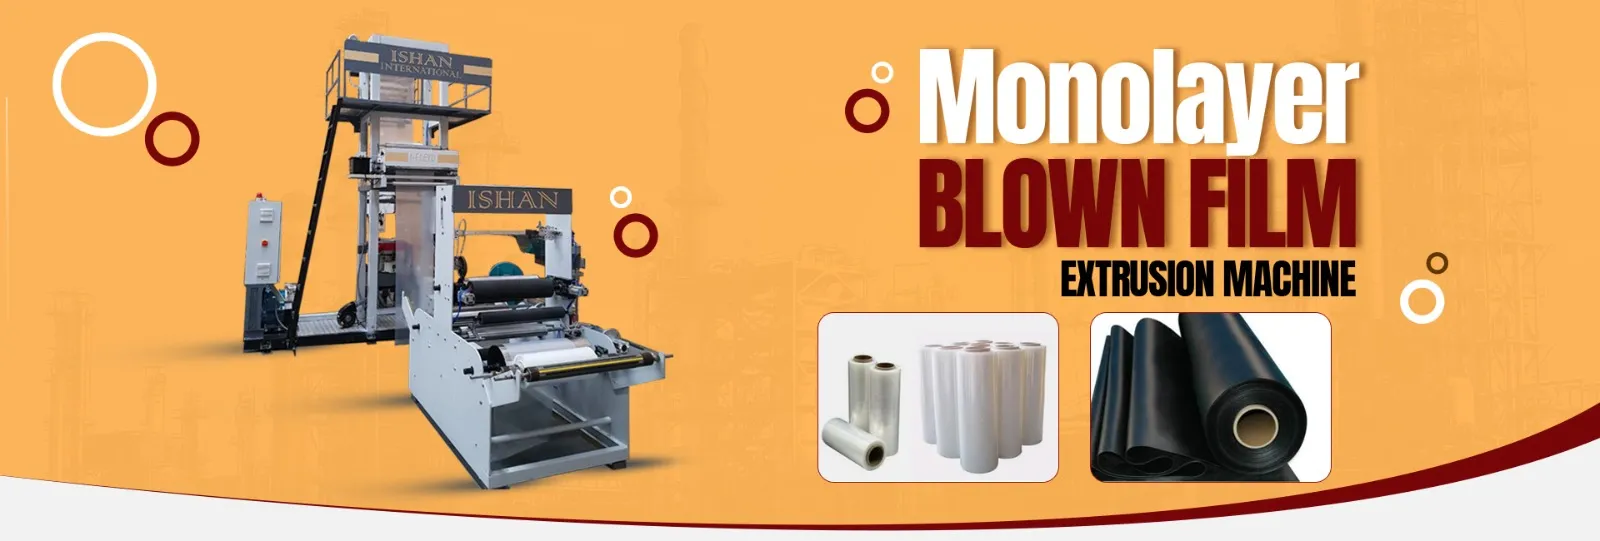 monolayer blown film extrusion machine